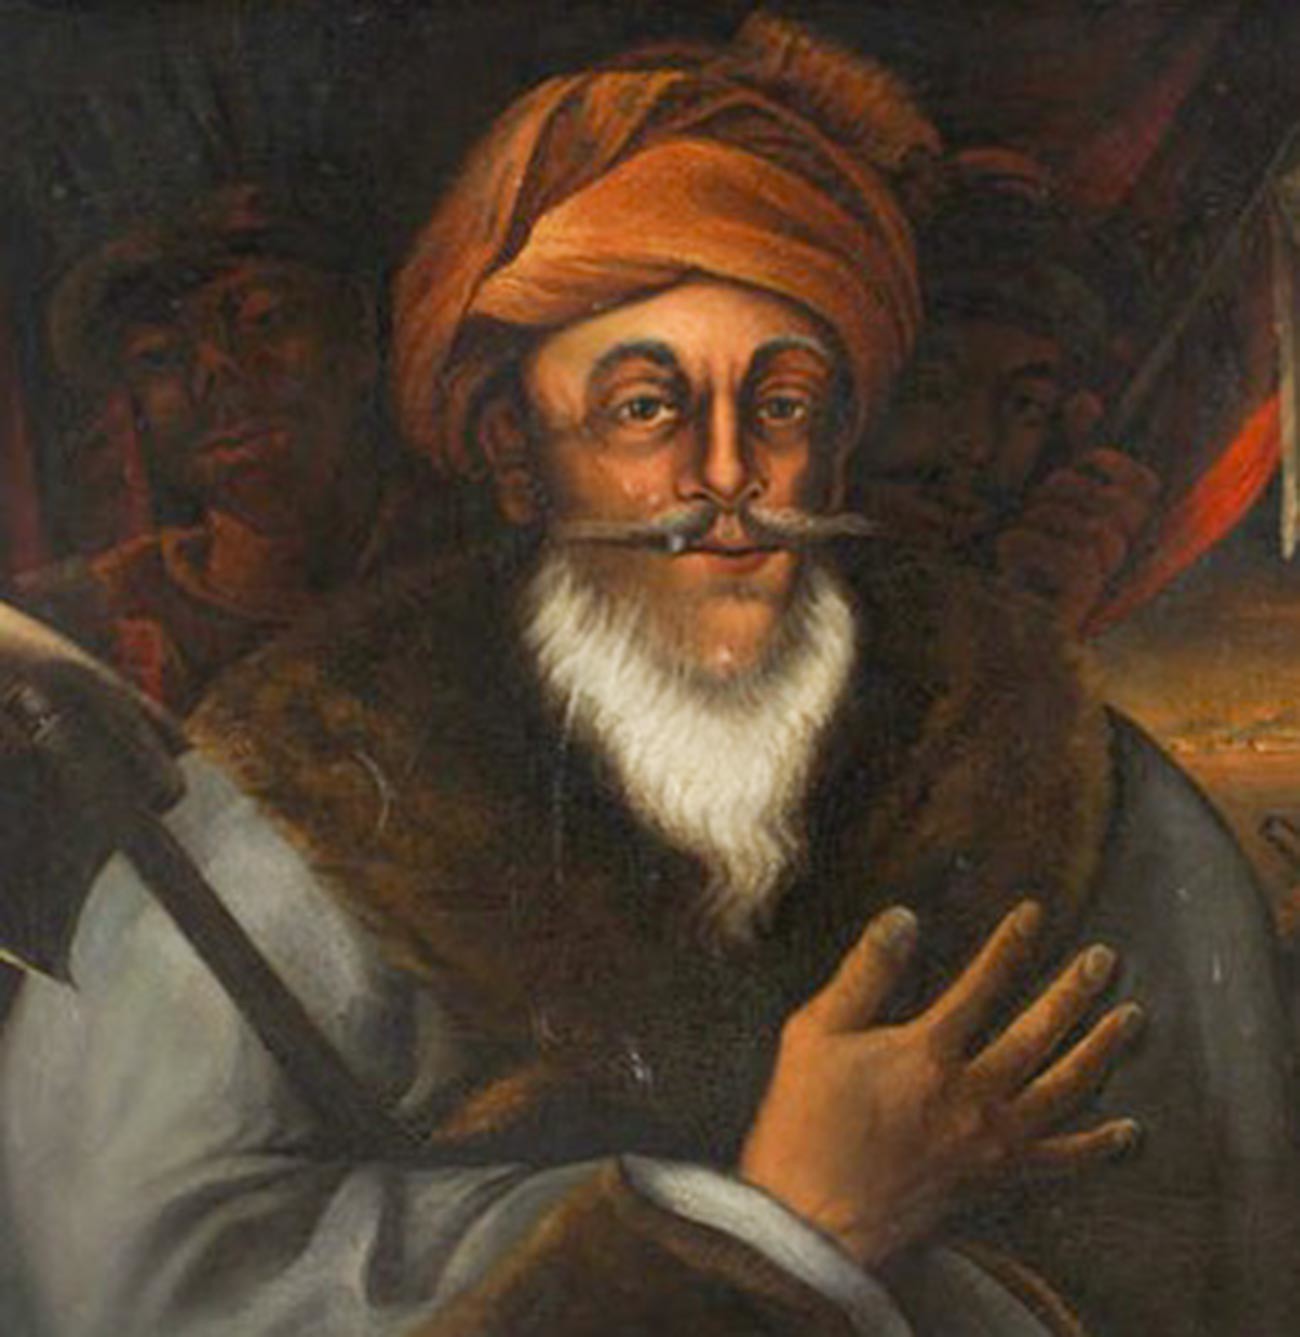 Ahmad al-Džazar